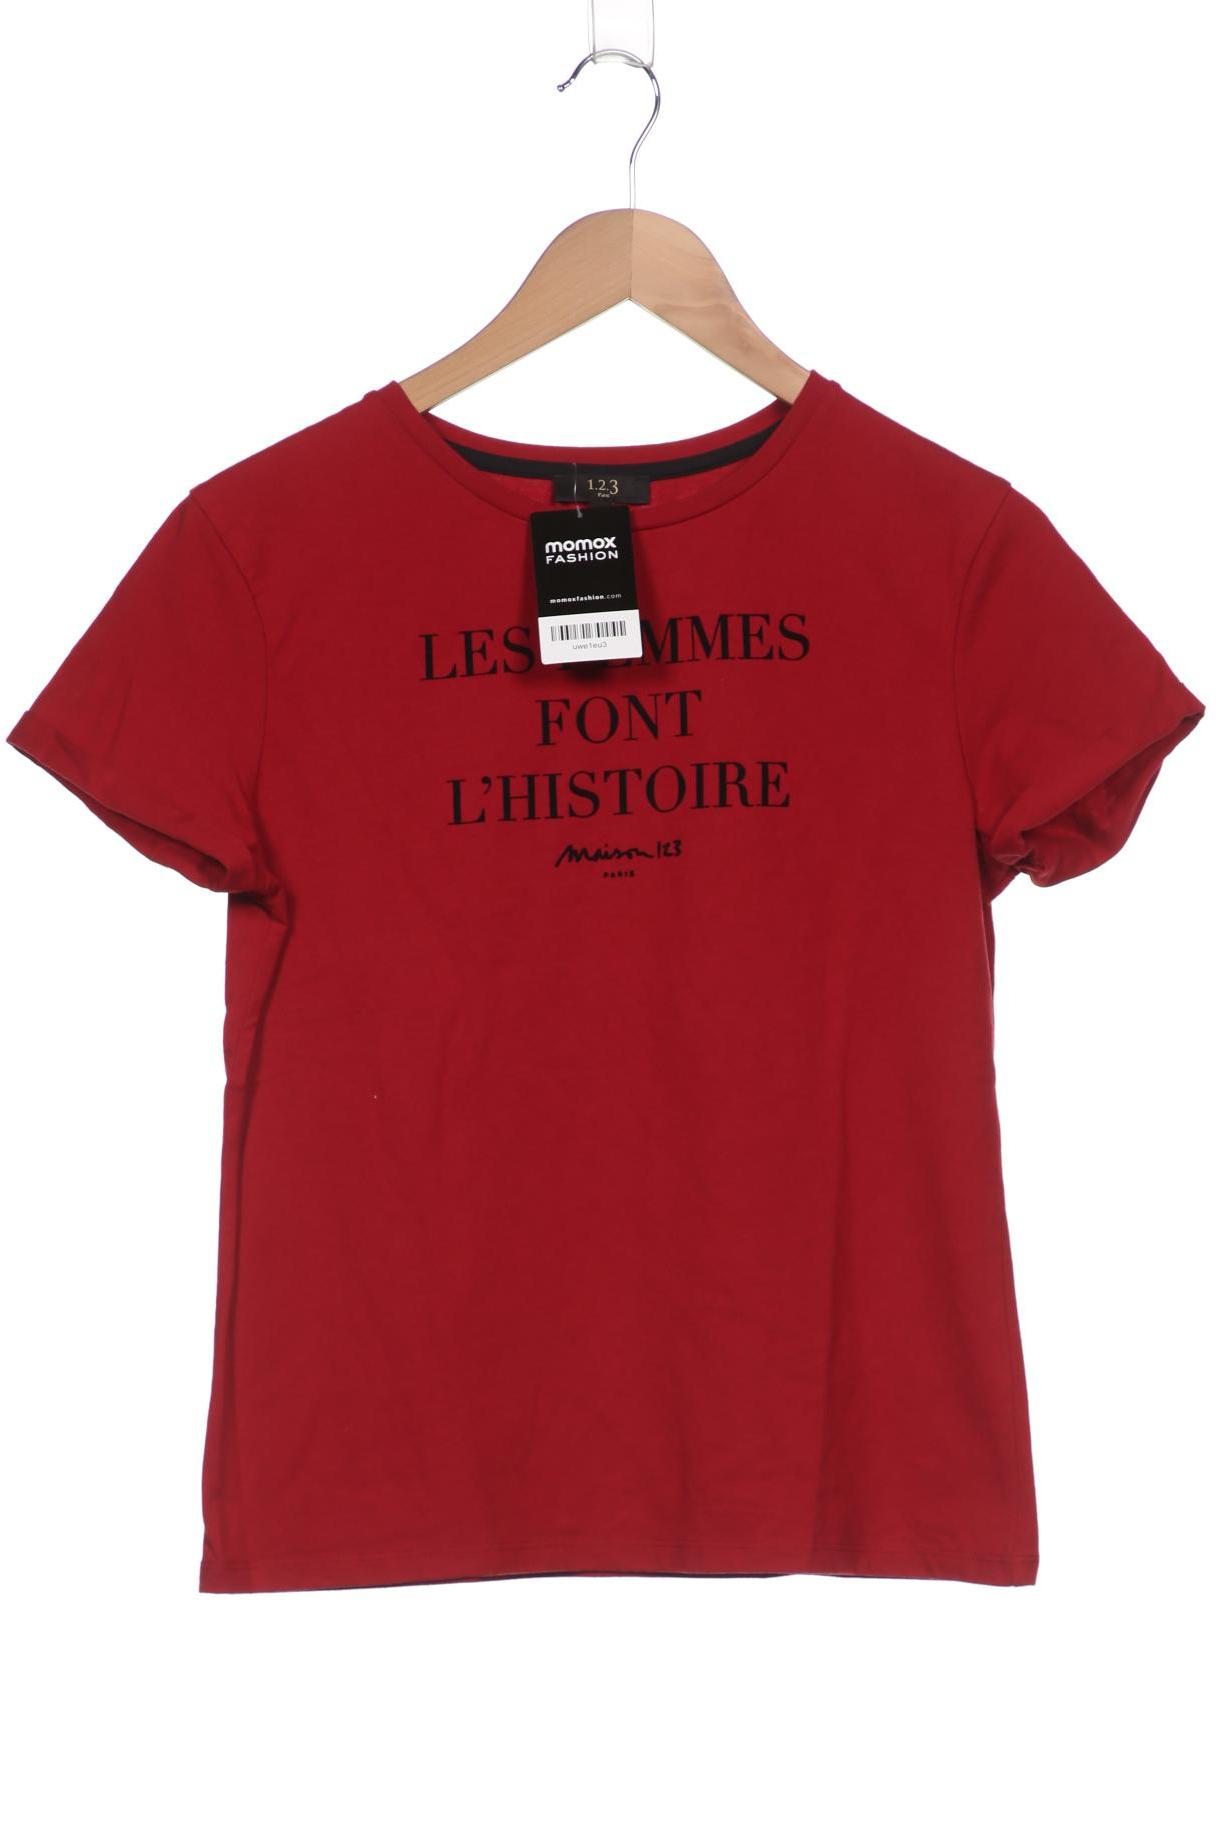 1 2 3 Paris Damen T-Shirt, bordeaux von 1 2 3 Paris